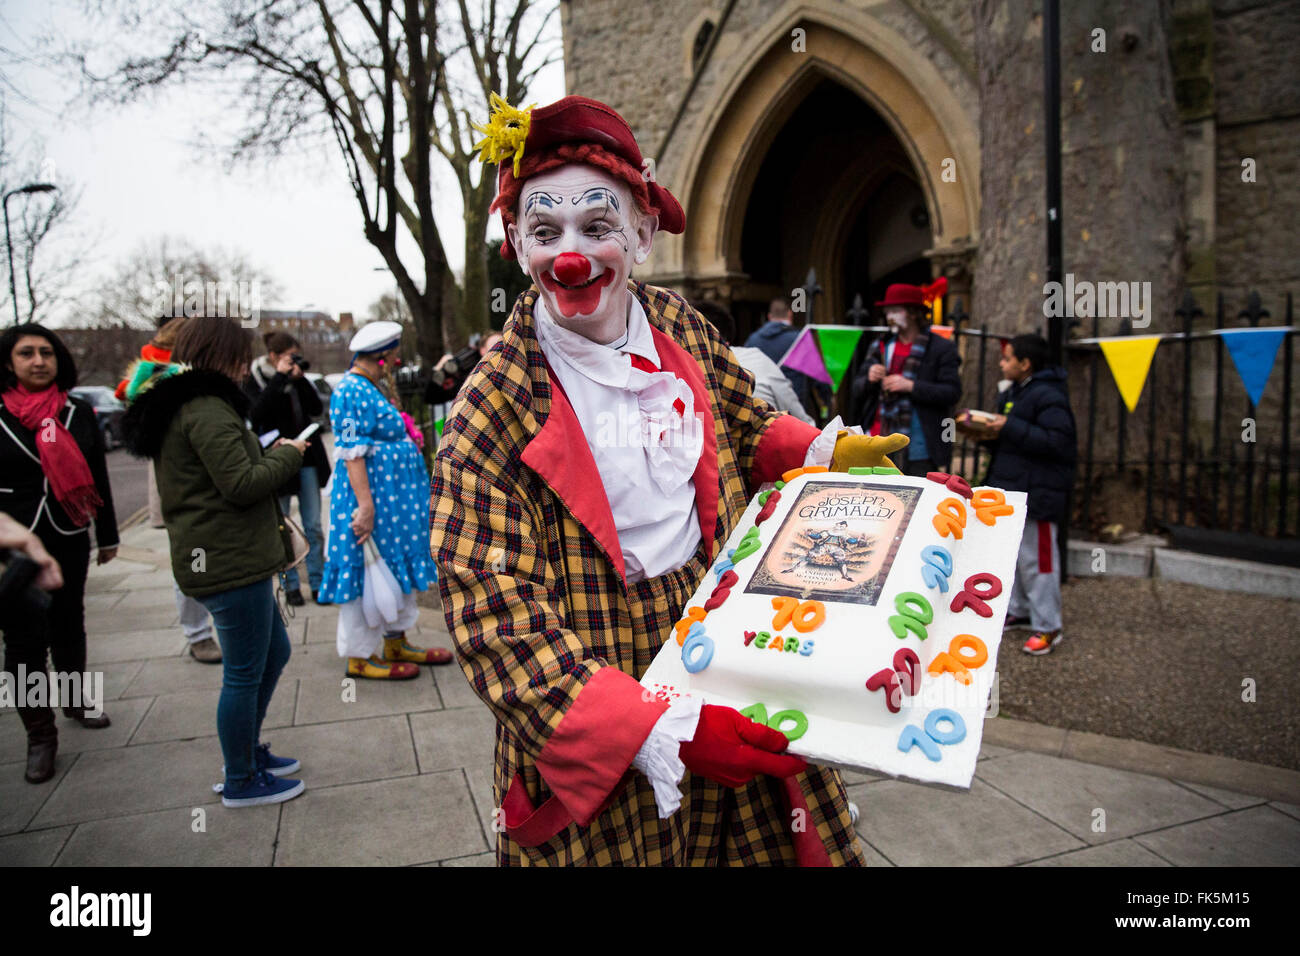 Regenbogen der Clown. Die 70. Clown-Jahresservice bei der All Saints Church in London am 7. Februar 2016. Clowns versammelten sich in der Kirche zu Joseph Grimaldi, der berühmte englische Clown erinnern, der zwischen 1778-1837 lebte. Stockfoto